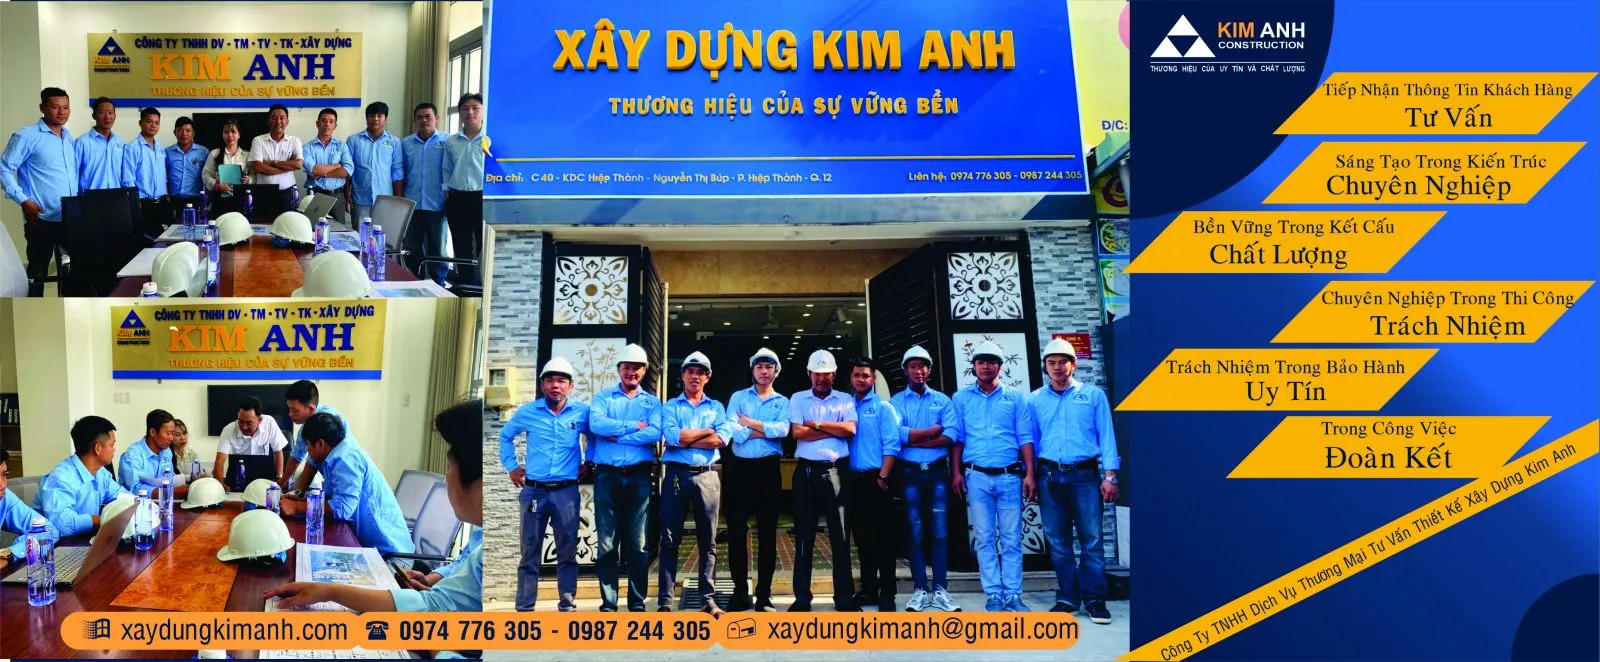 Xây Dựng Kim Anh - Công ty sửa nhà trọn gói uy tín Quận Bình Tân